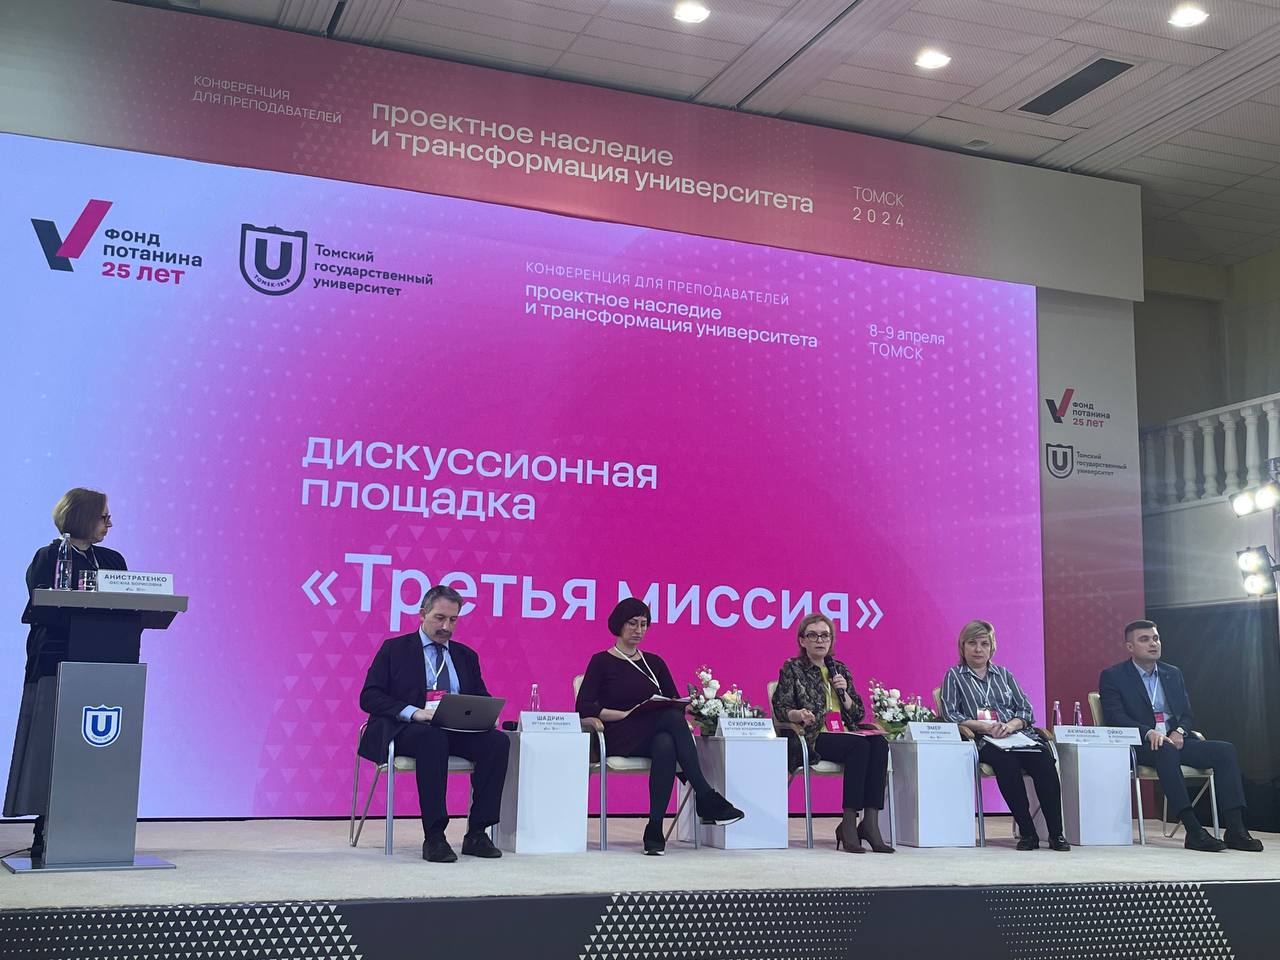 Артём Шадрин рассказал в Томске о «третьей миссии» университета